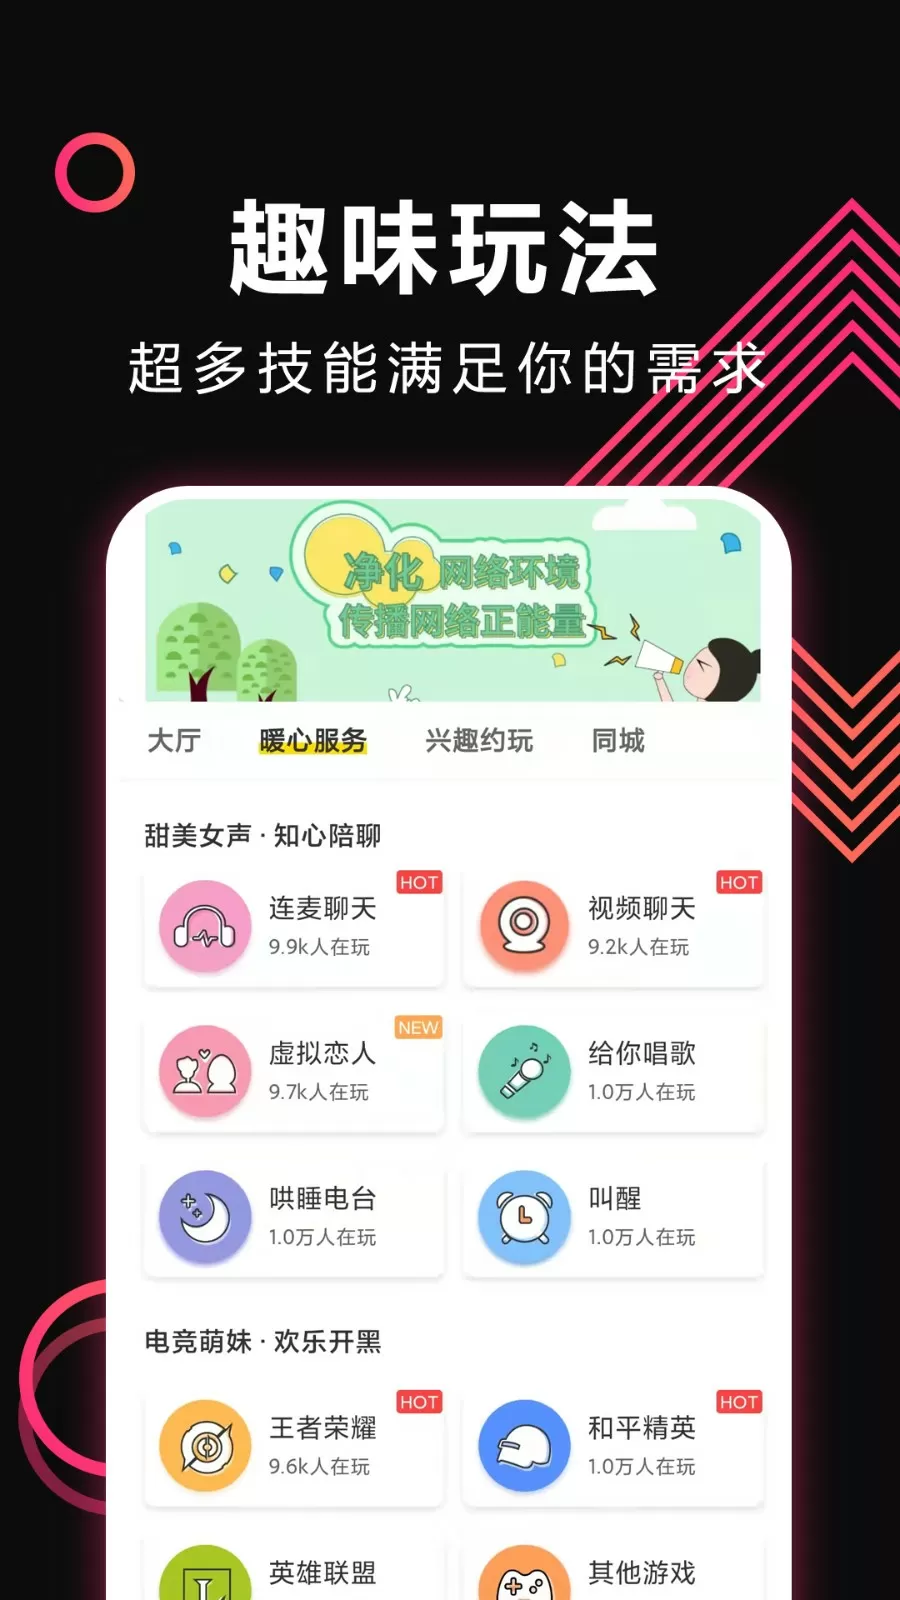 新媒体创业大赛中文版